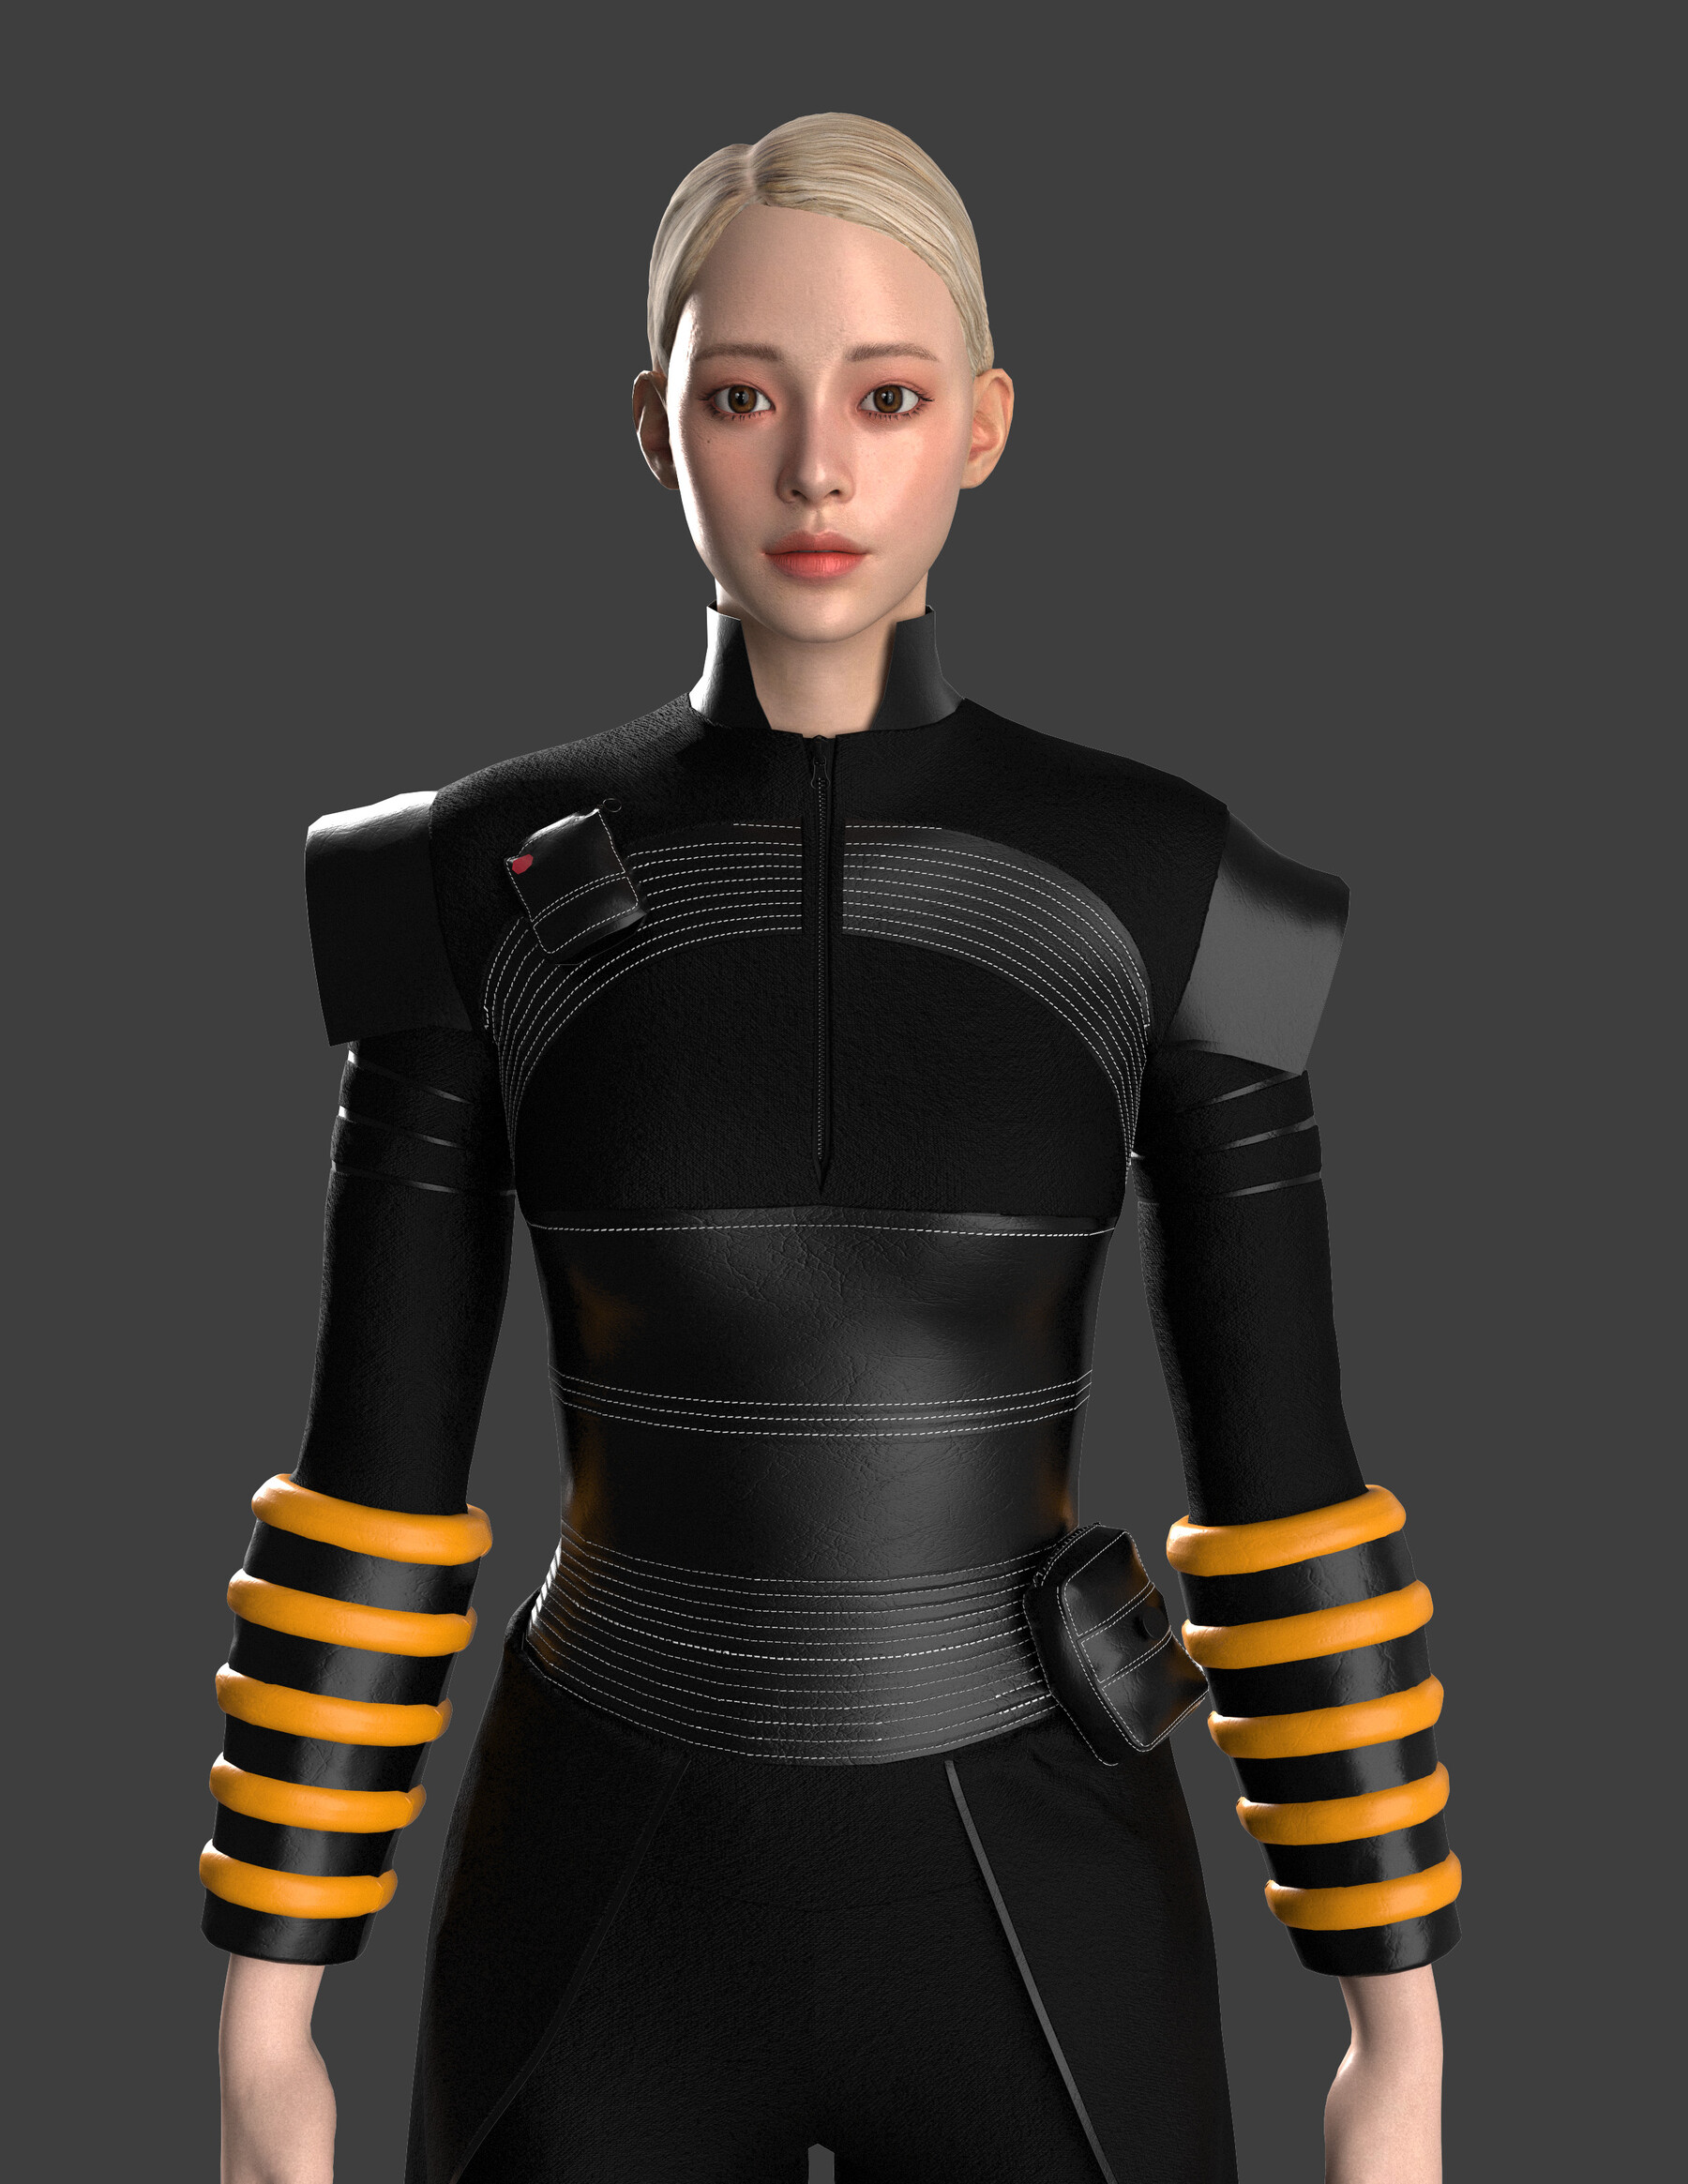 3D Bodysuit Models